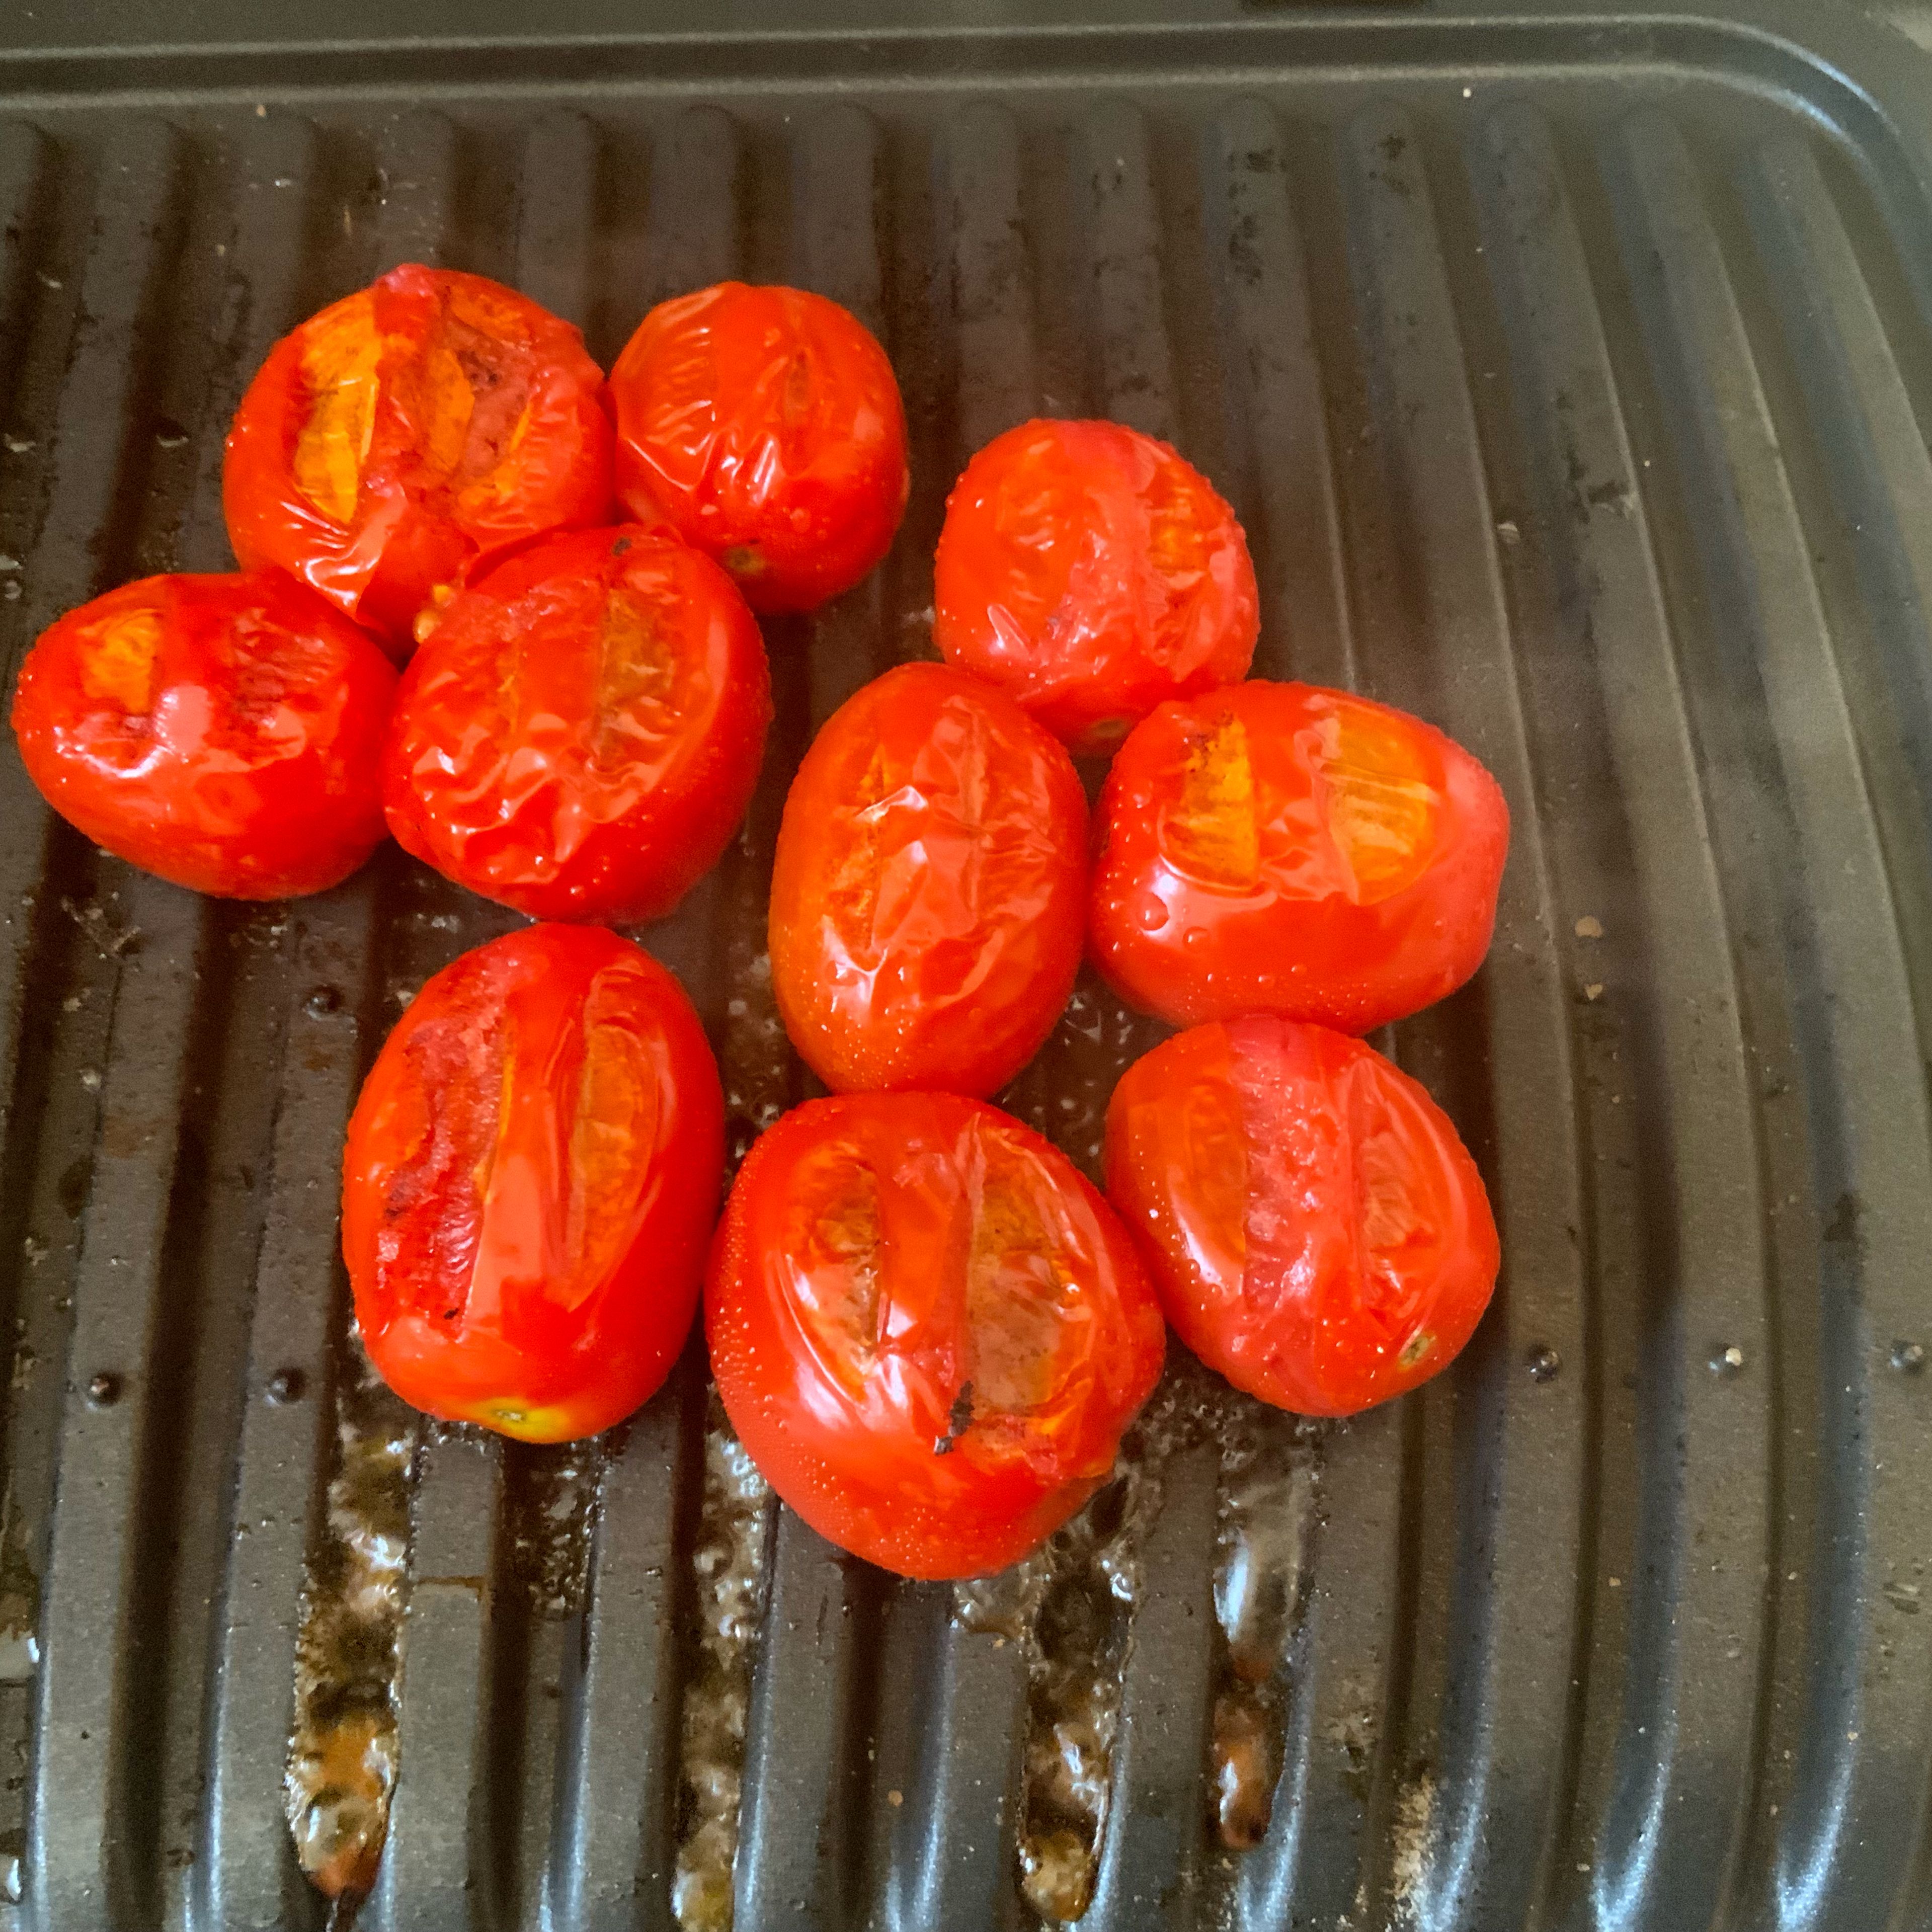 ... dann kommen die Tomaten. Gegrillt machen sie einen leckeren leicht säuerlichen Kontrapunkt im Antipasti. Dazu die Cocktailtomaten auf den Tischgrill legen, ca. 2-3 Minuten grillen. Nix mehr dazu machen, nicht würzen, die sprechen für sich selbst😊